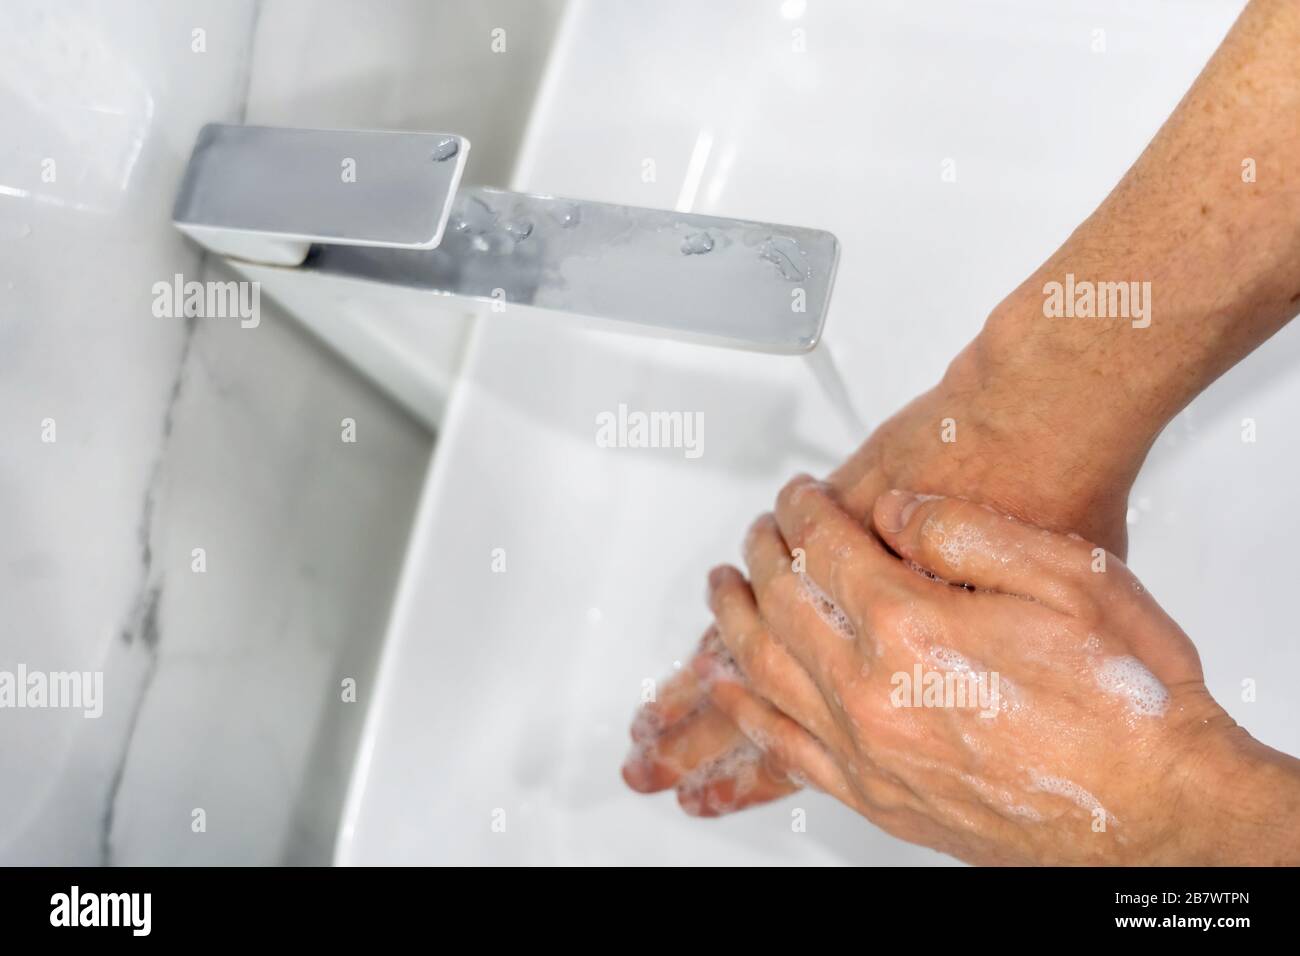 Lávese las manos. Protección fiable contra Coronavirus covid 19 Foto de stock